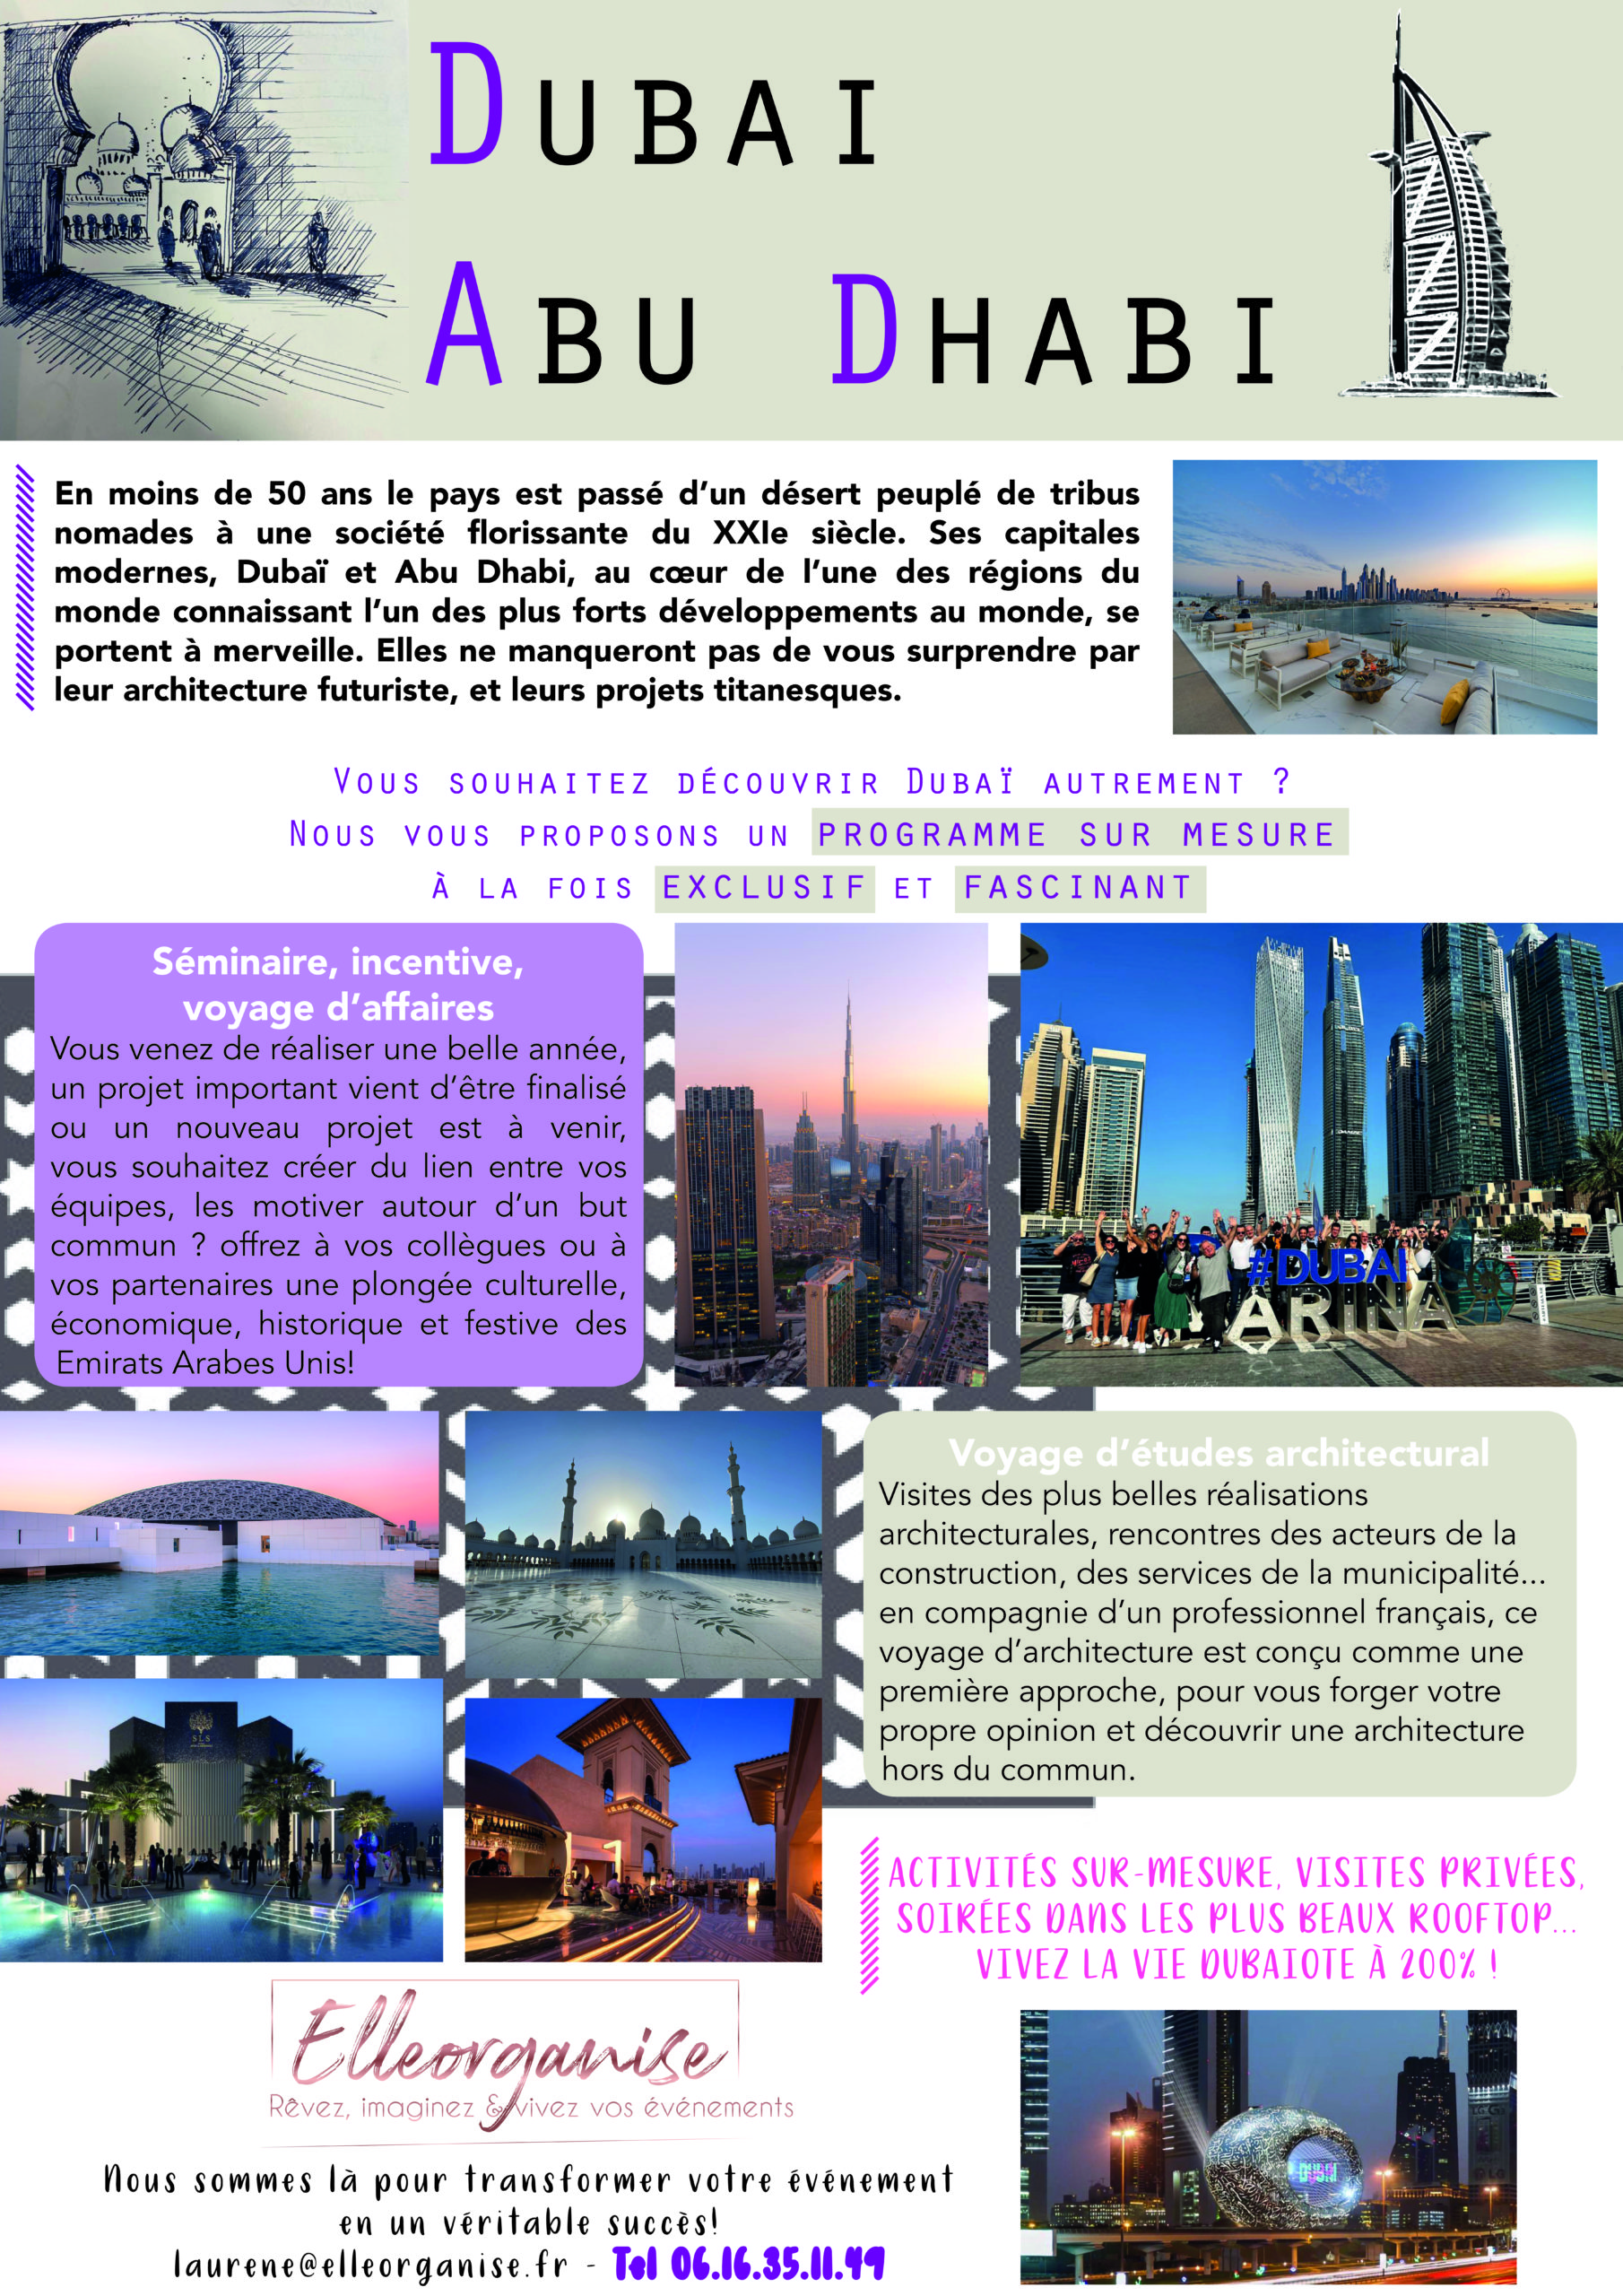 Dubaï et Abu Dhabi, la prochaine destination pour votre évènement!